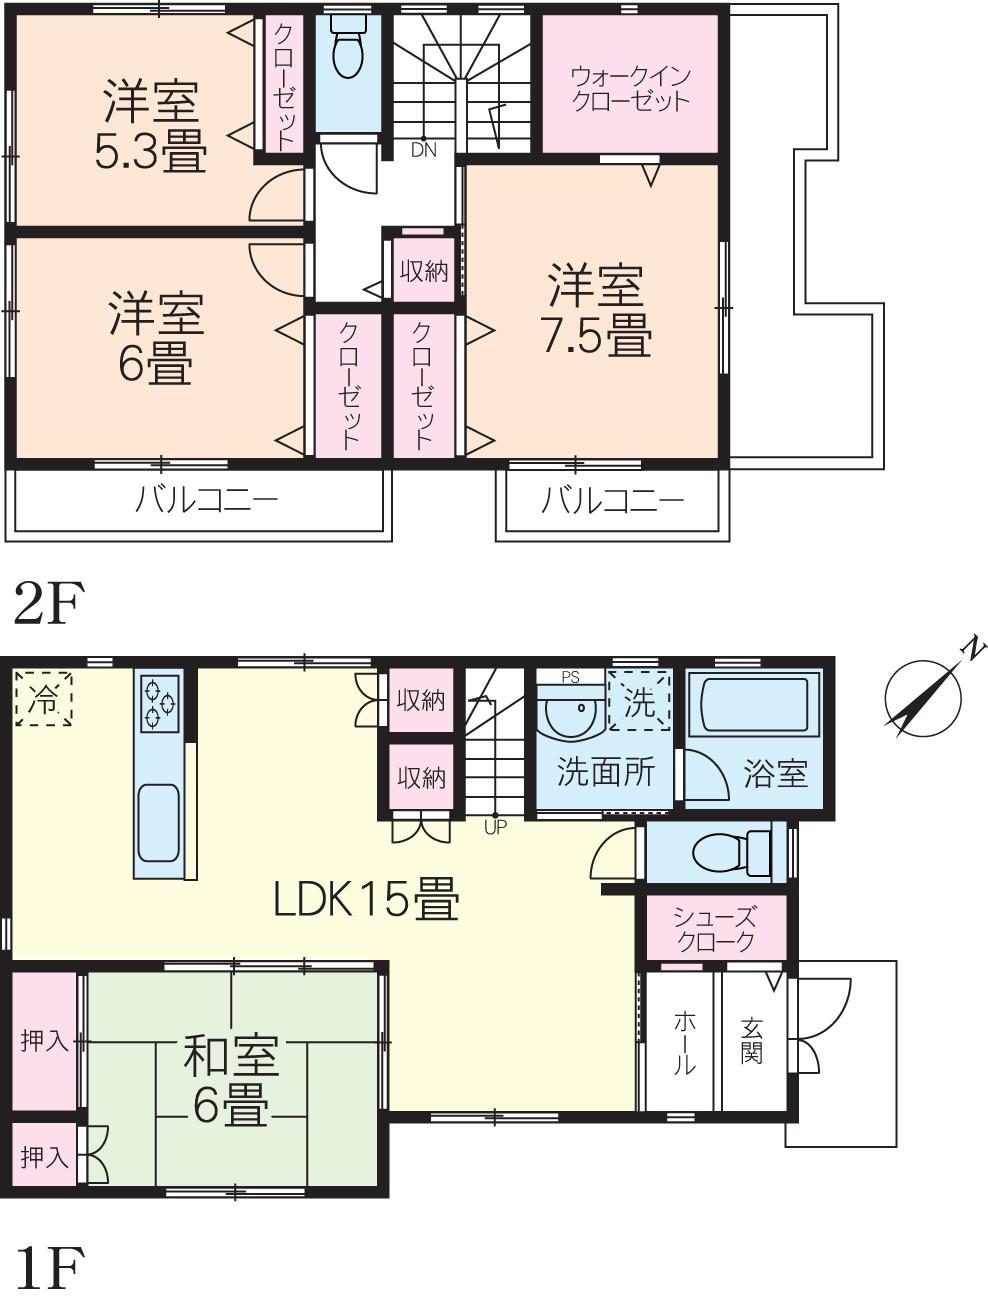 Floor plan. 20.8 million yen, 4LDK, Land area 140.26 sq m , Building area 104.33 sq m